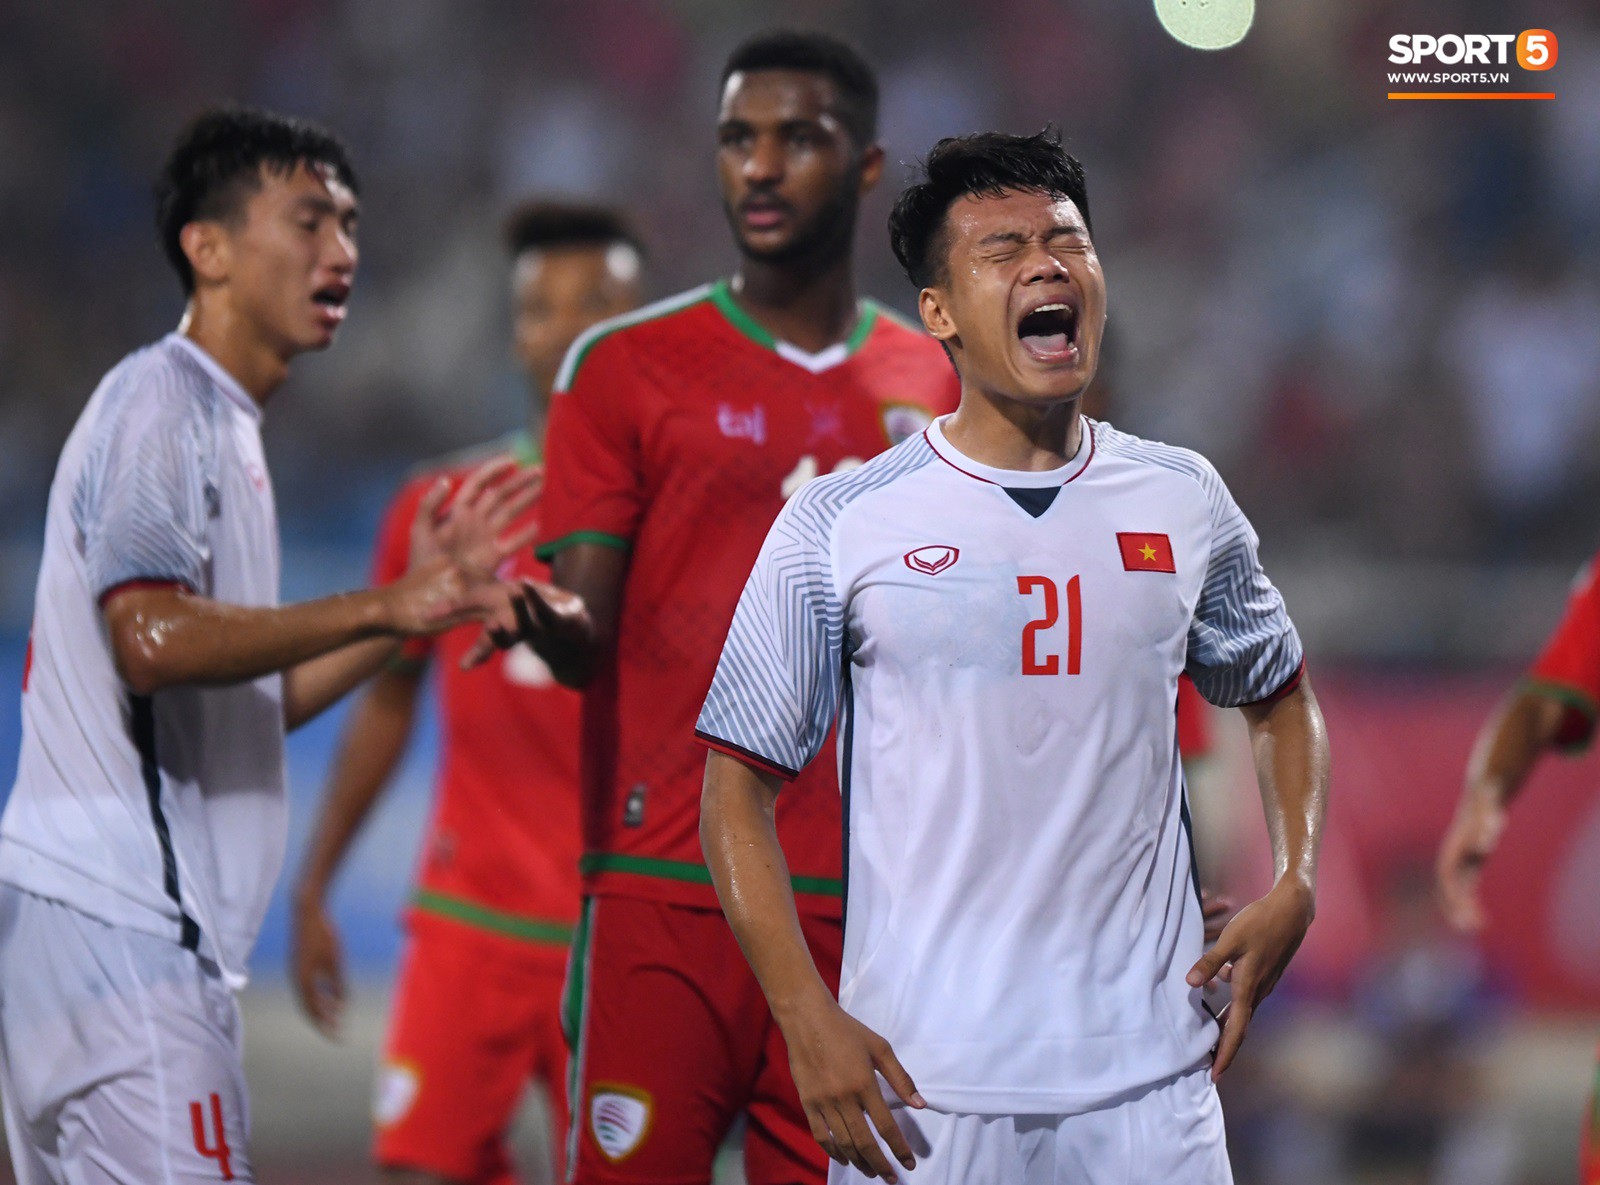 Những khoảnh khắc tiếc nuối sau hàng tá cơ hội bị bỏ lỡ của U23 Việt Nam - Ảnh 5.